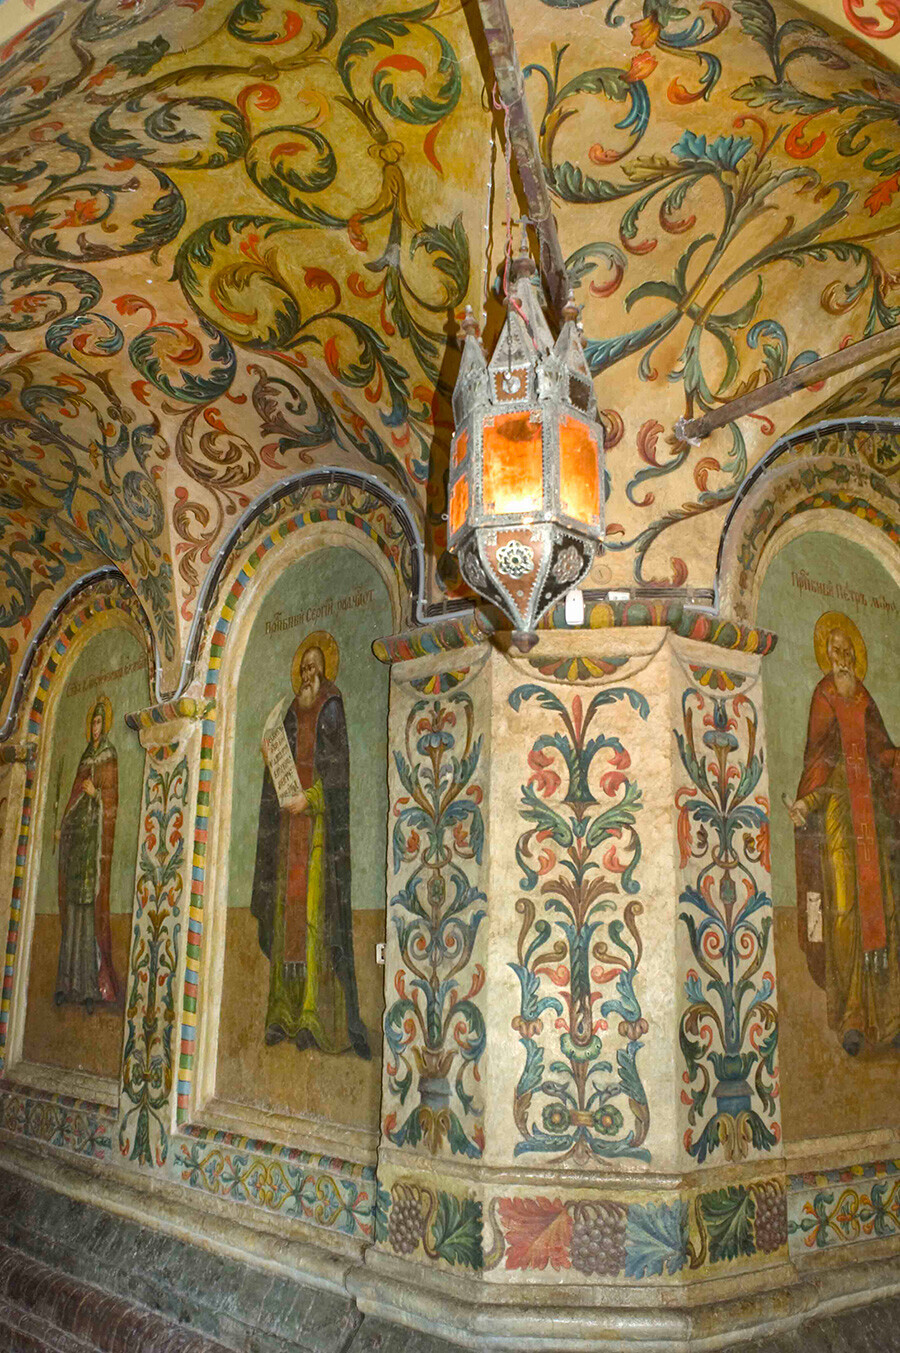 Katedrala Vasilija Blaženega, notranjost. Južni galerijski prehod s stenskimi poslikavami iz 18. stoletja. Z leve: sveta Katarina, sveti Sergij Radoneški, metropolit Peter. 2. junija 2012.
